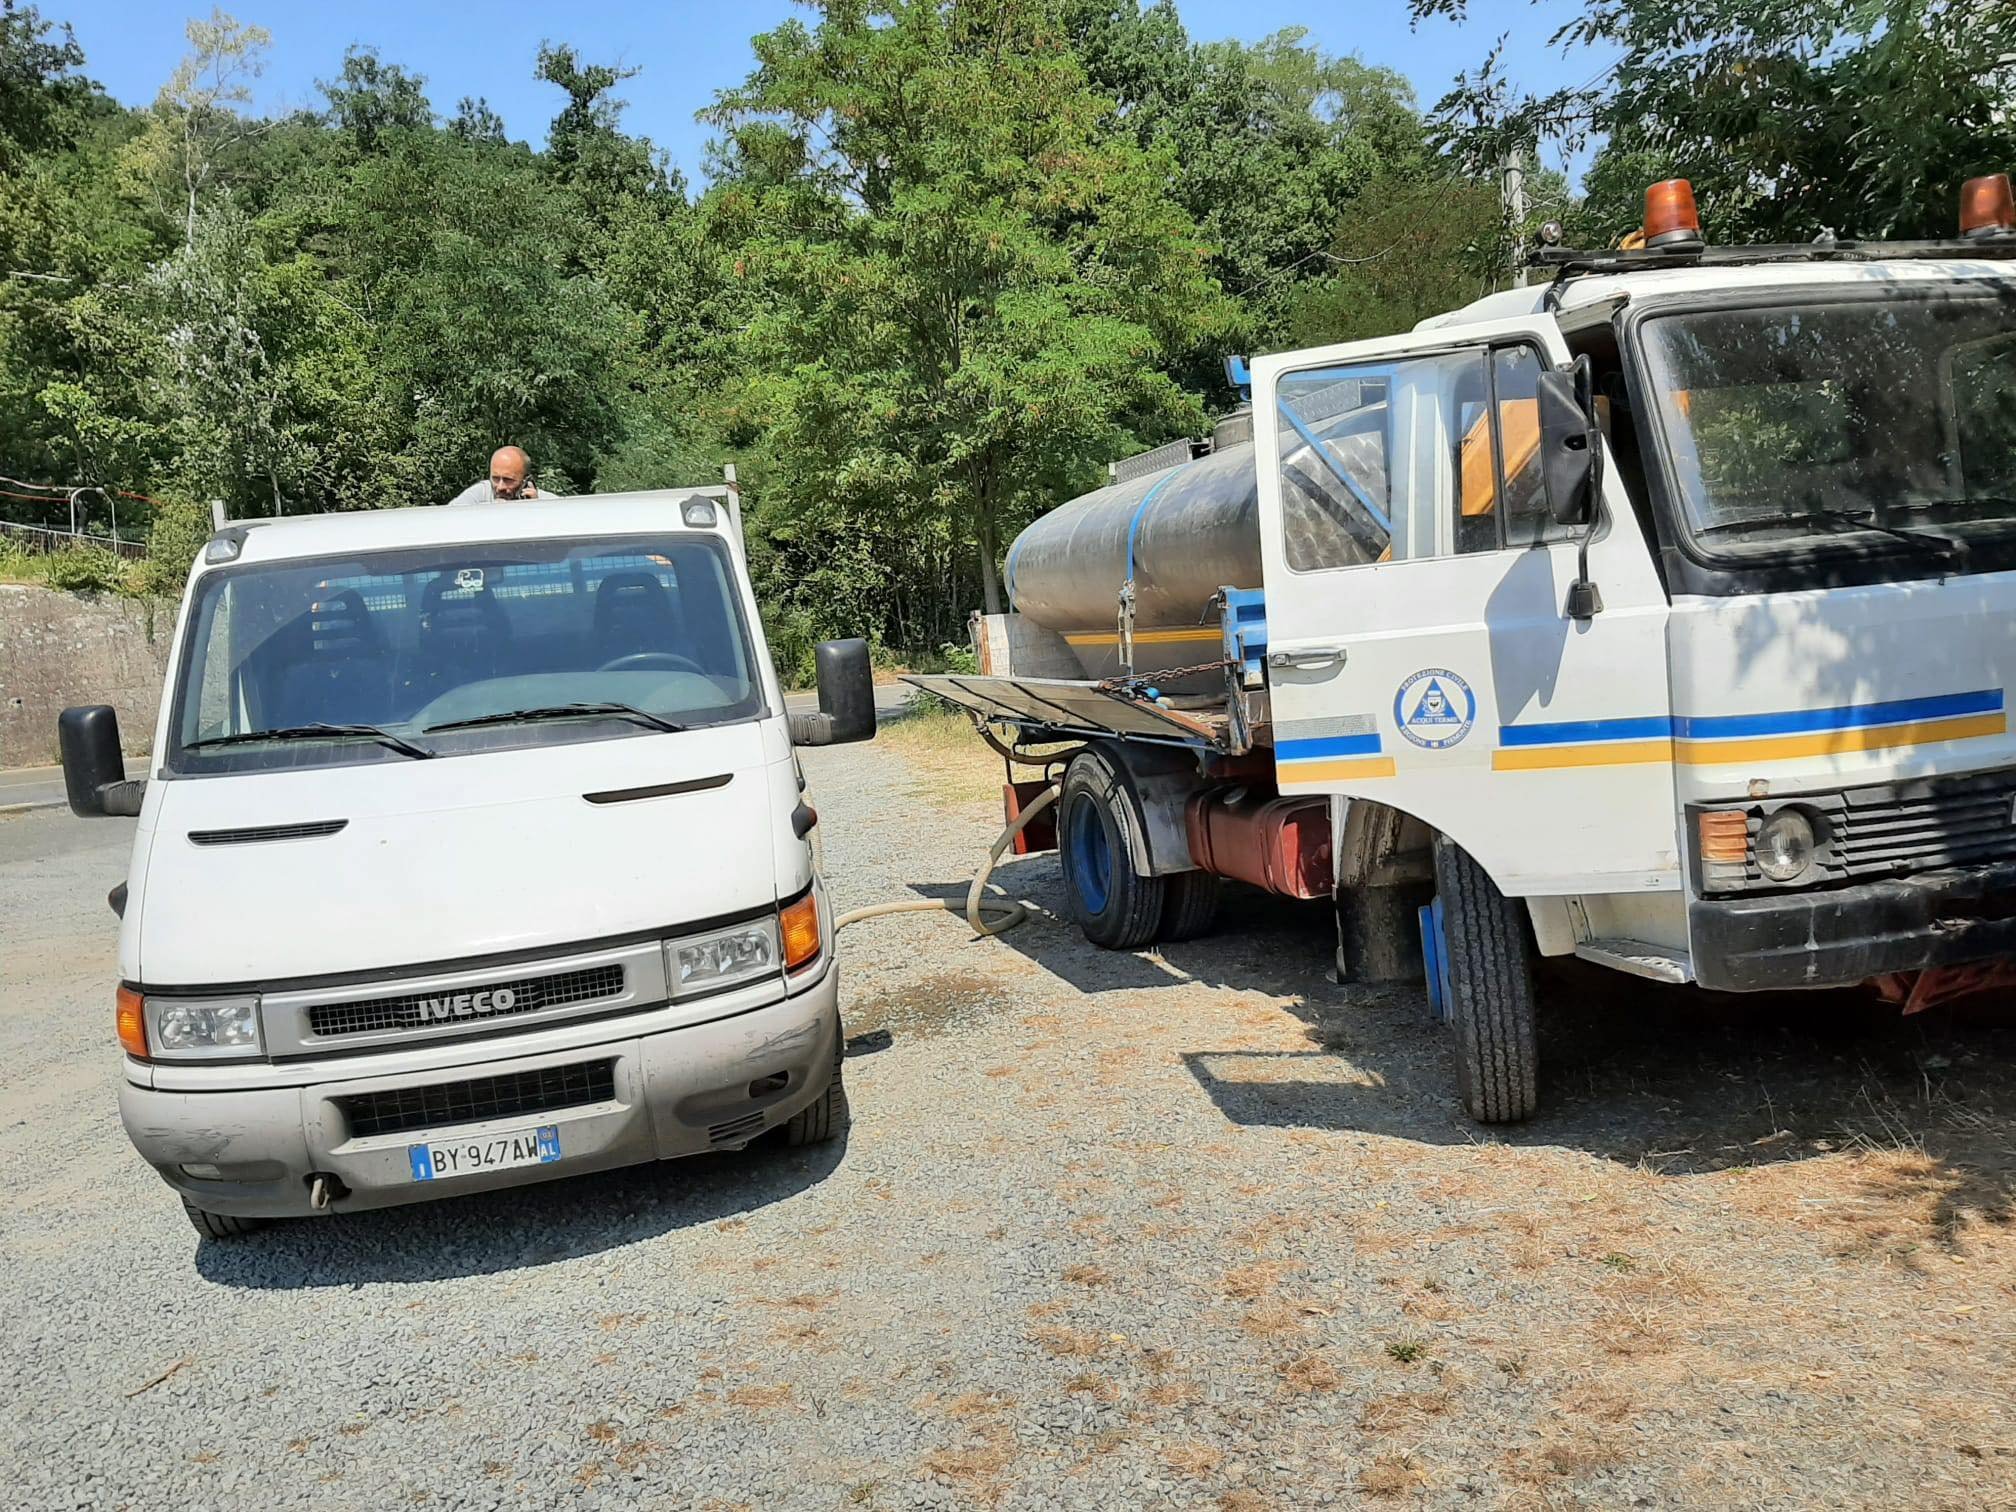 Protezione Civile e Amag hanno consegnato dell’acqua potabile in località Gaini a Cartosio